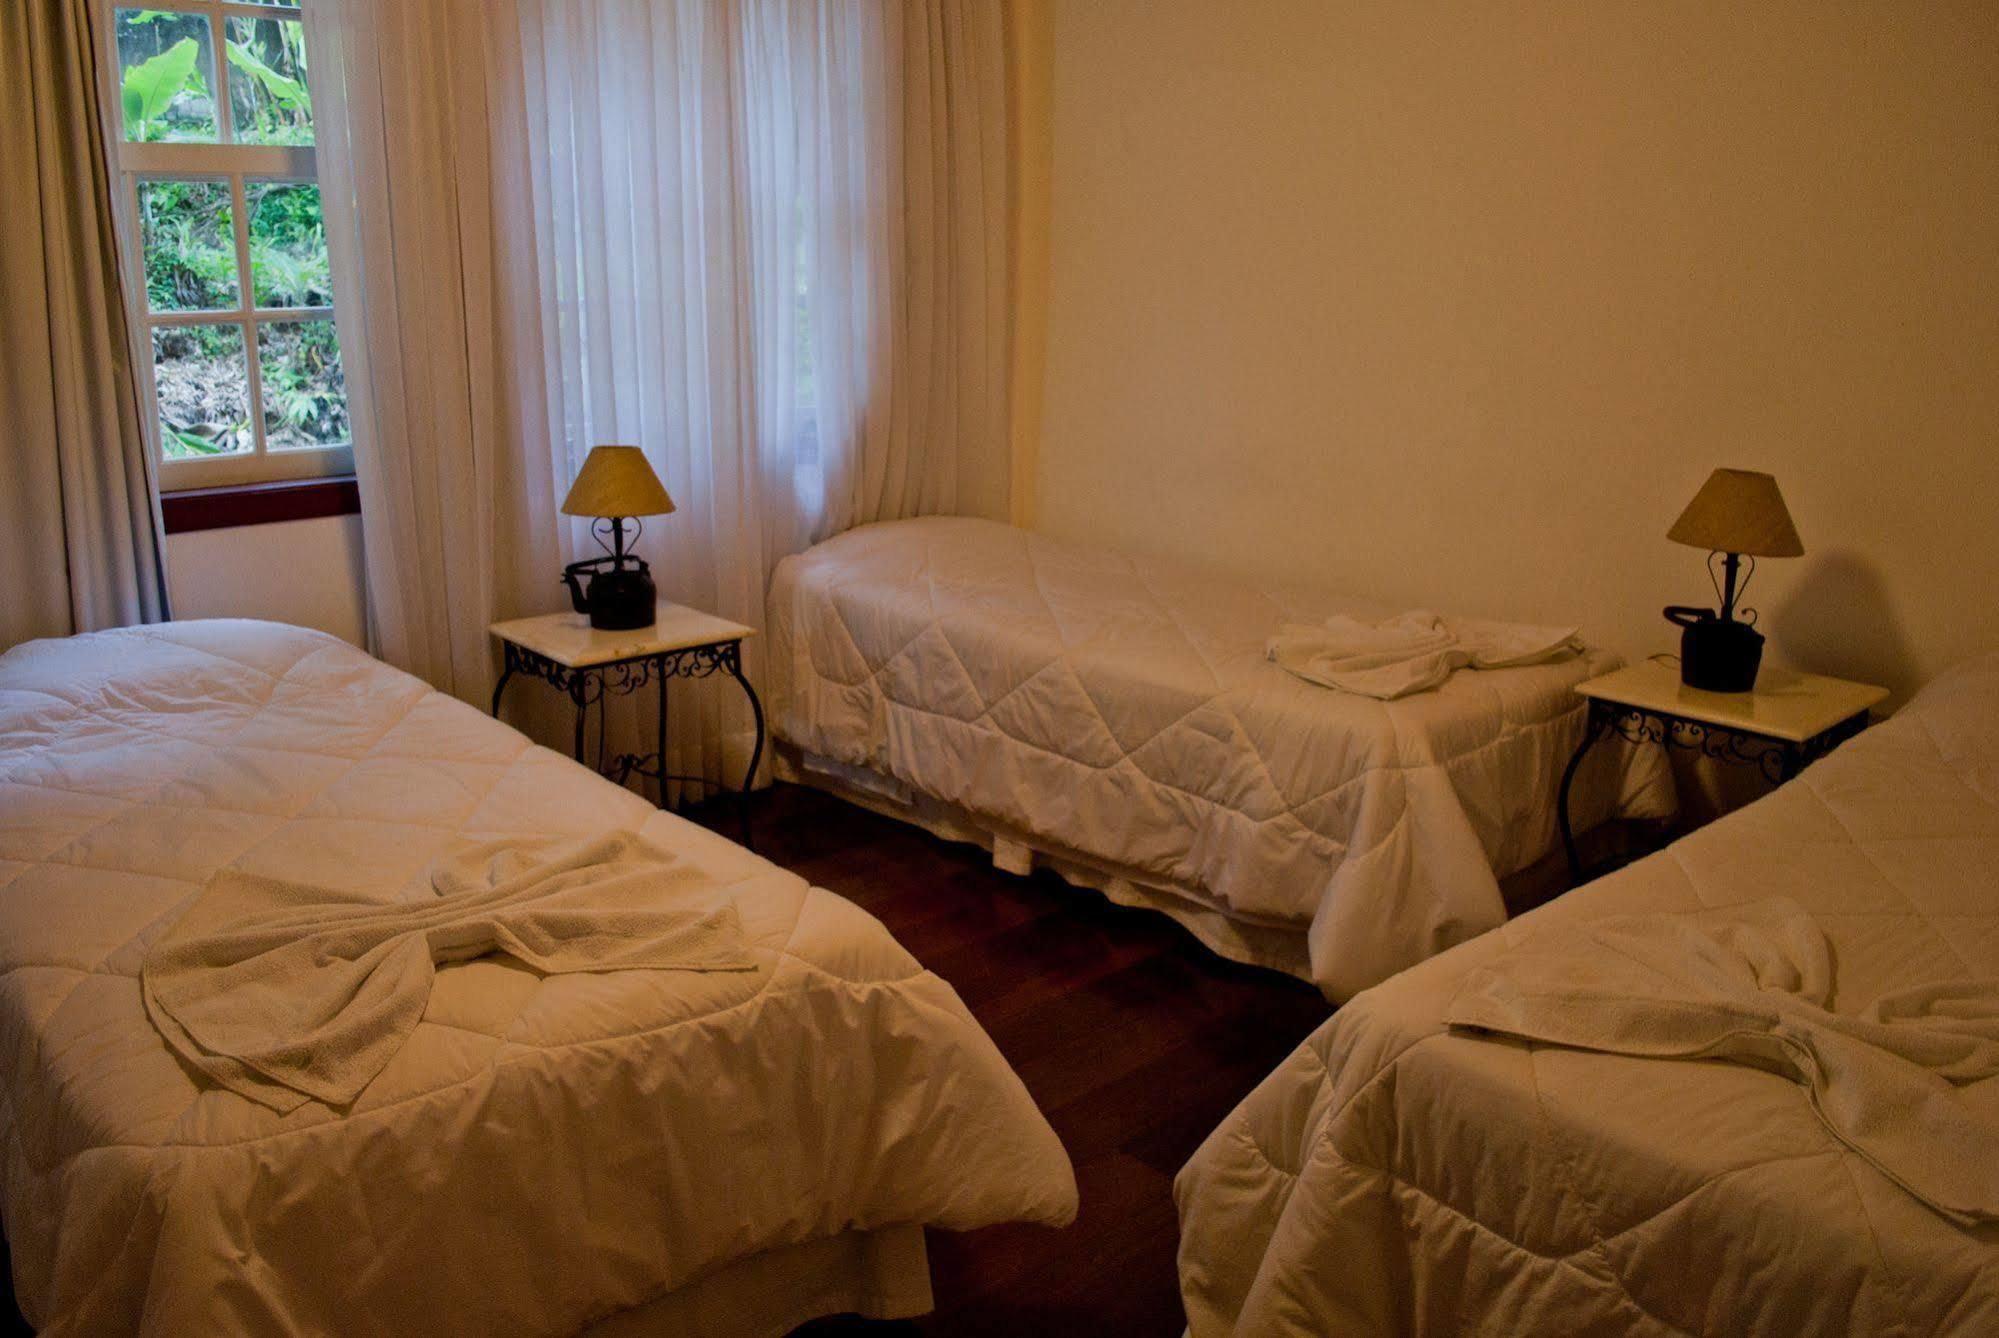 Hotel Pousada Arcadia Mineira Ouro Preto  Zewnętrze zdjęcie